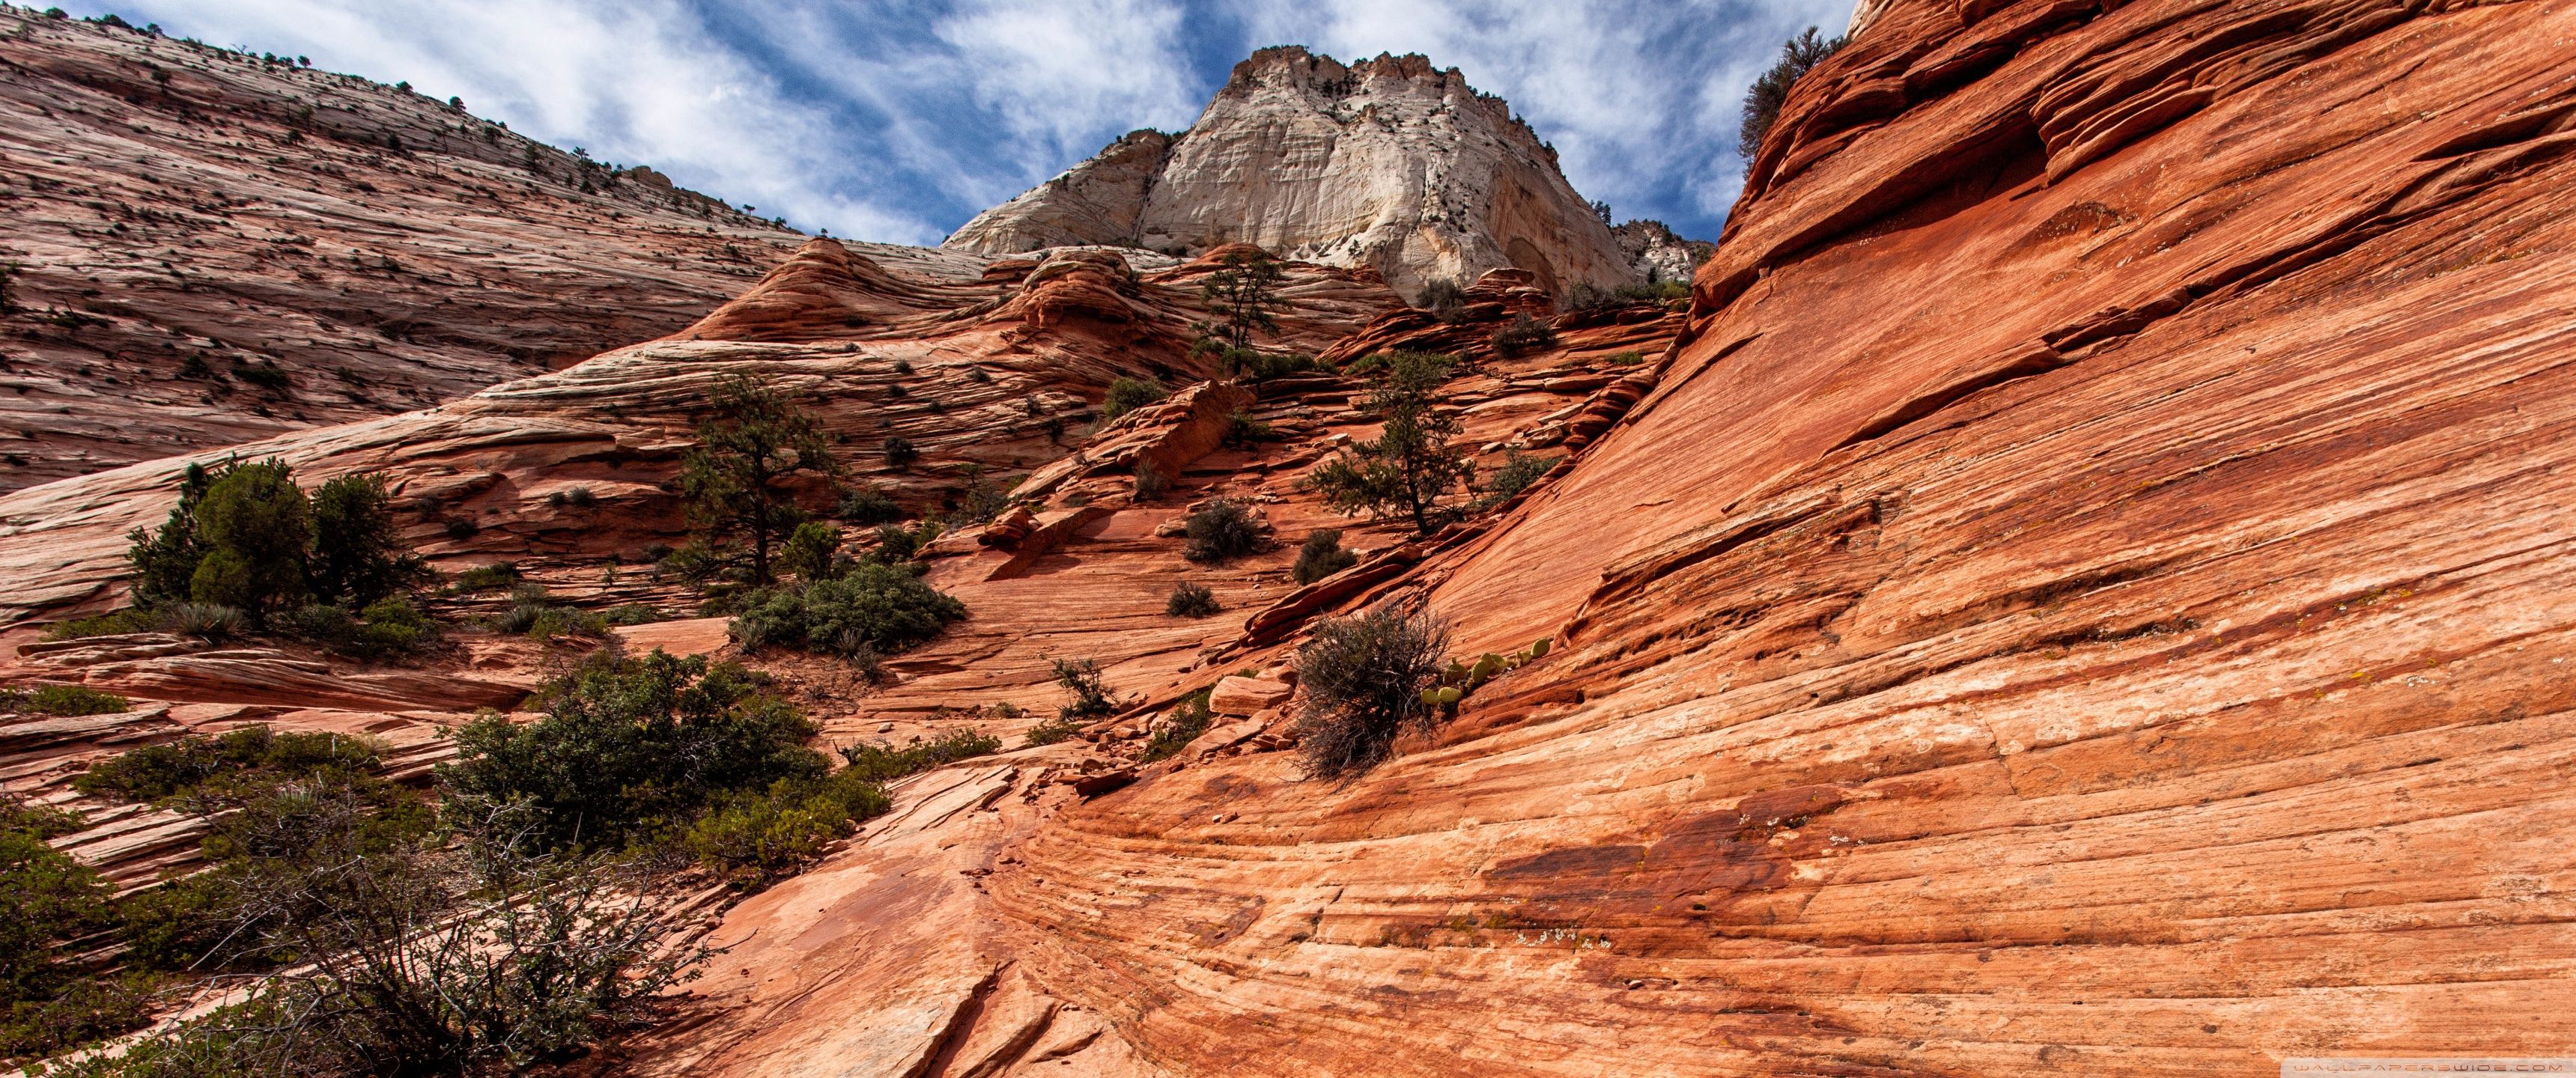 Zion National Park, Utah HD desktop wallpaper, Widescreen, High